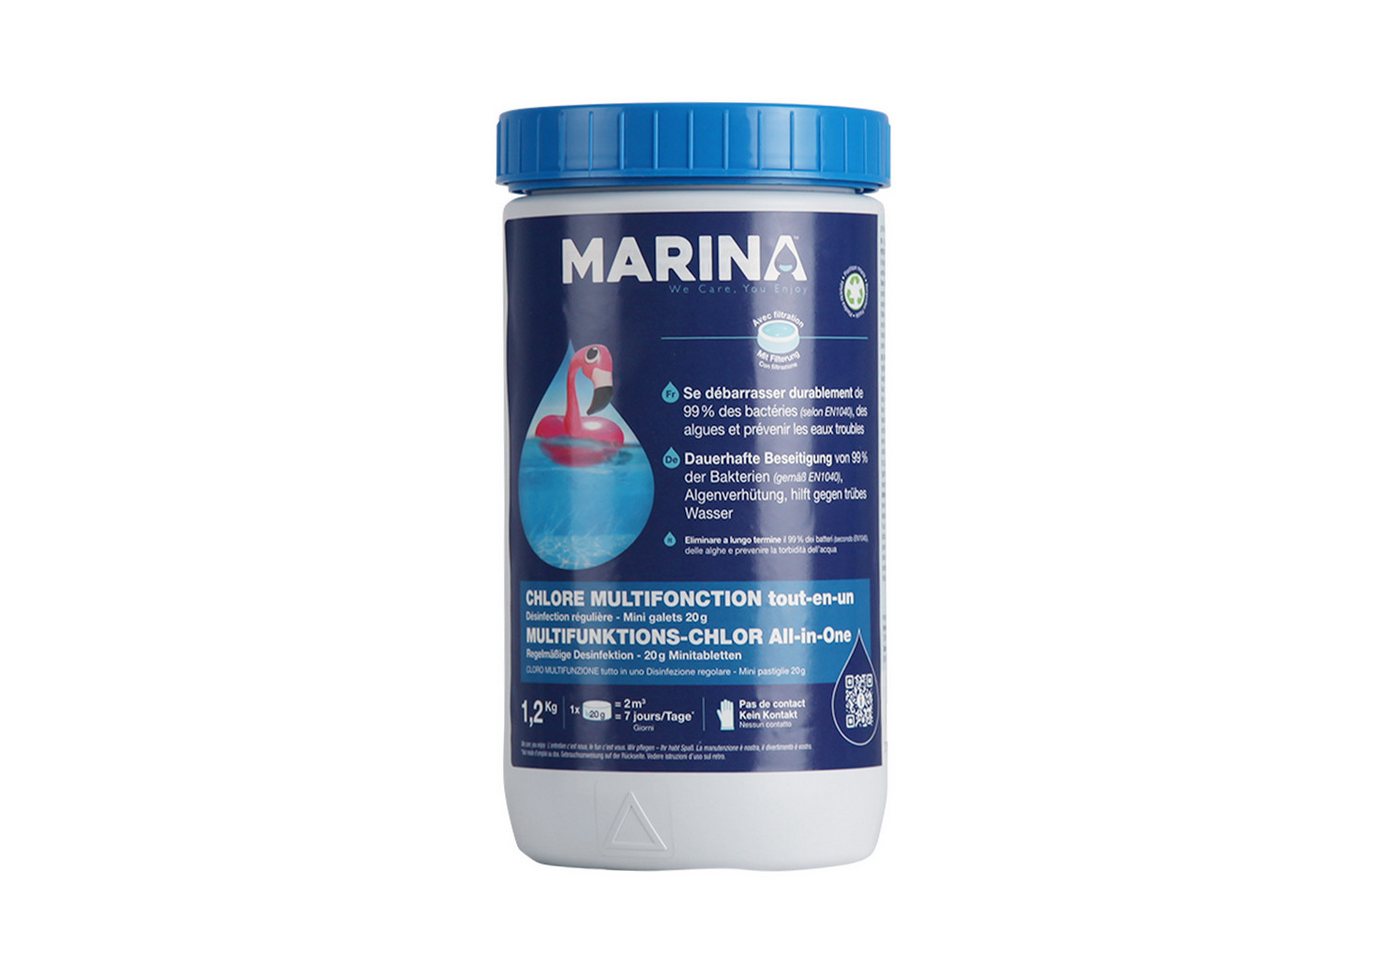 Bestlivings Chlortabletten Marina Multitabs 20g - Multifunktion 5 in 1, (120 x 20g Tabs), Chlortabletten für kleine/mittlere Pools (2x 1,2kg) von Bestlivings